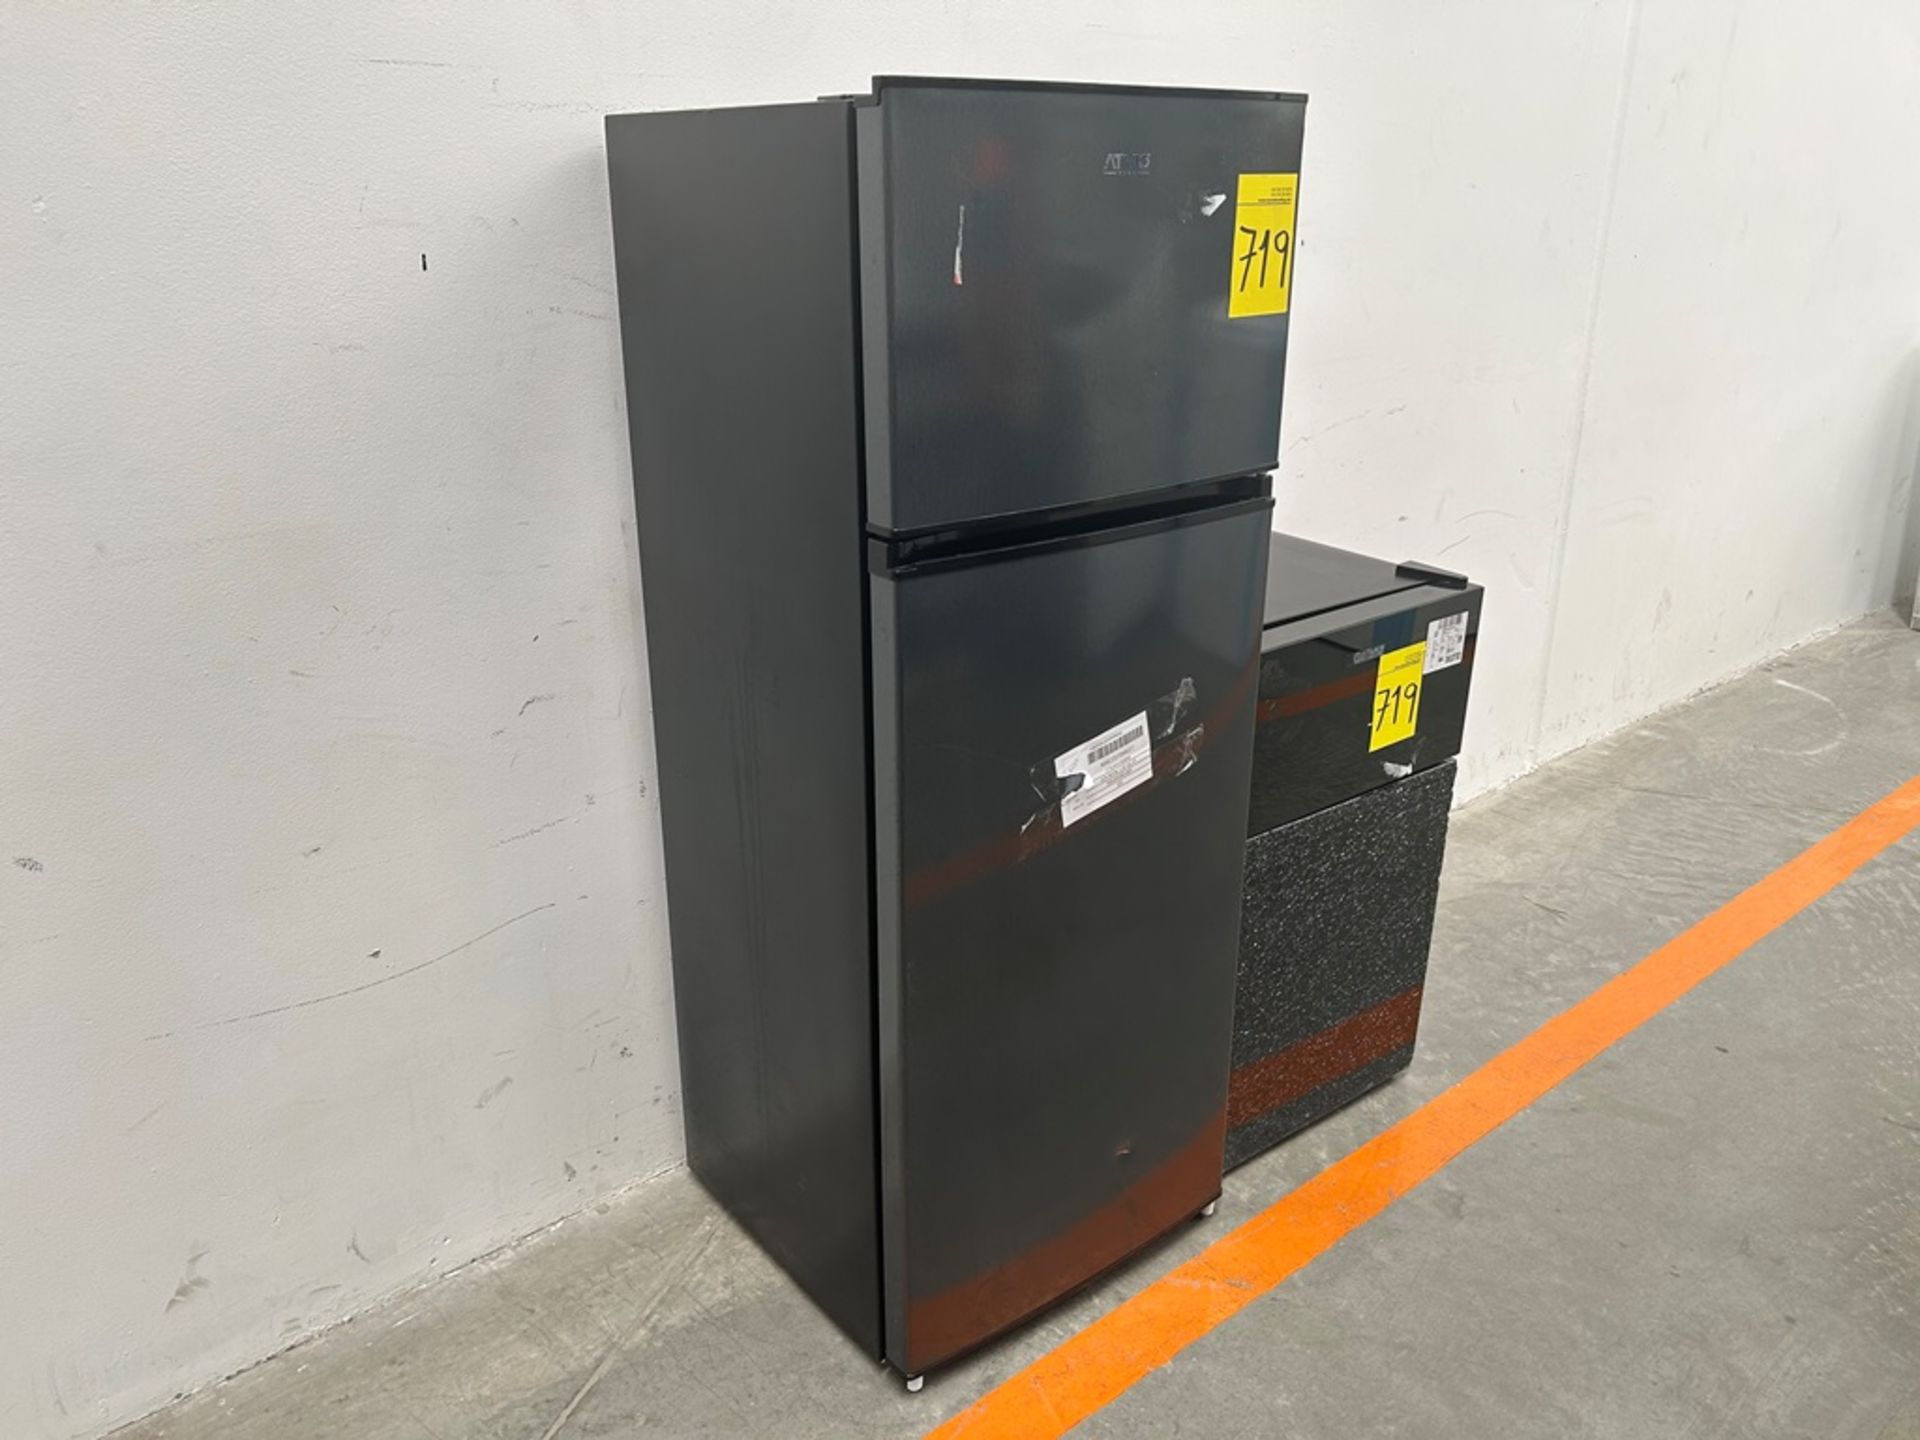 Lote de 1 refrigerador y 1 frigobar contiene:1 refrigerador Marca ATVIO, Modelo AT73TMS, Serie 1065 - Image 3 of 20